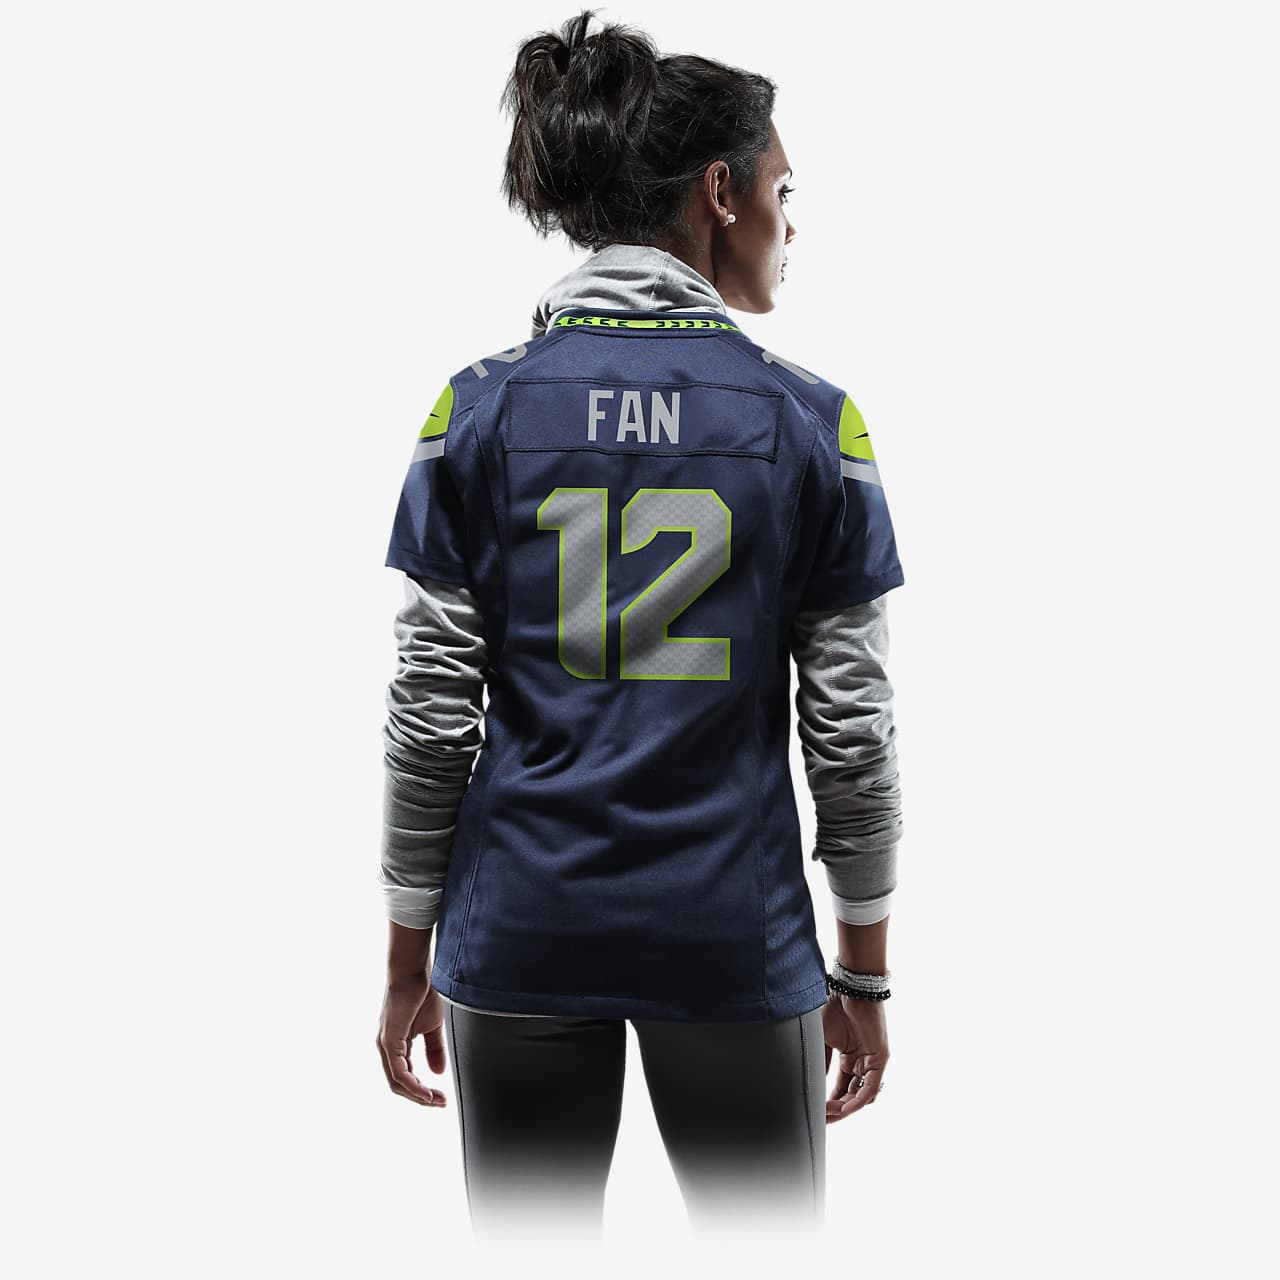 NFL Seattle Seahawks (12 Fan) Women's Game Football Jersey. Nike.com